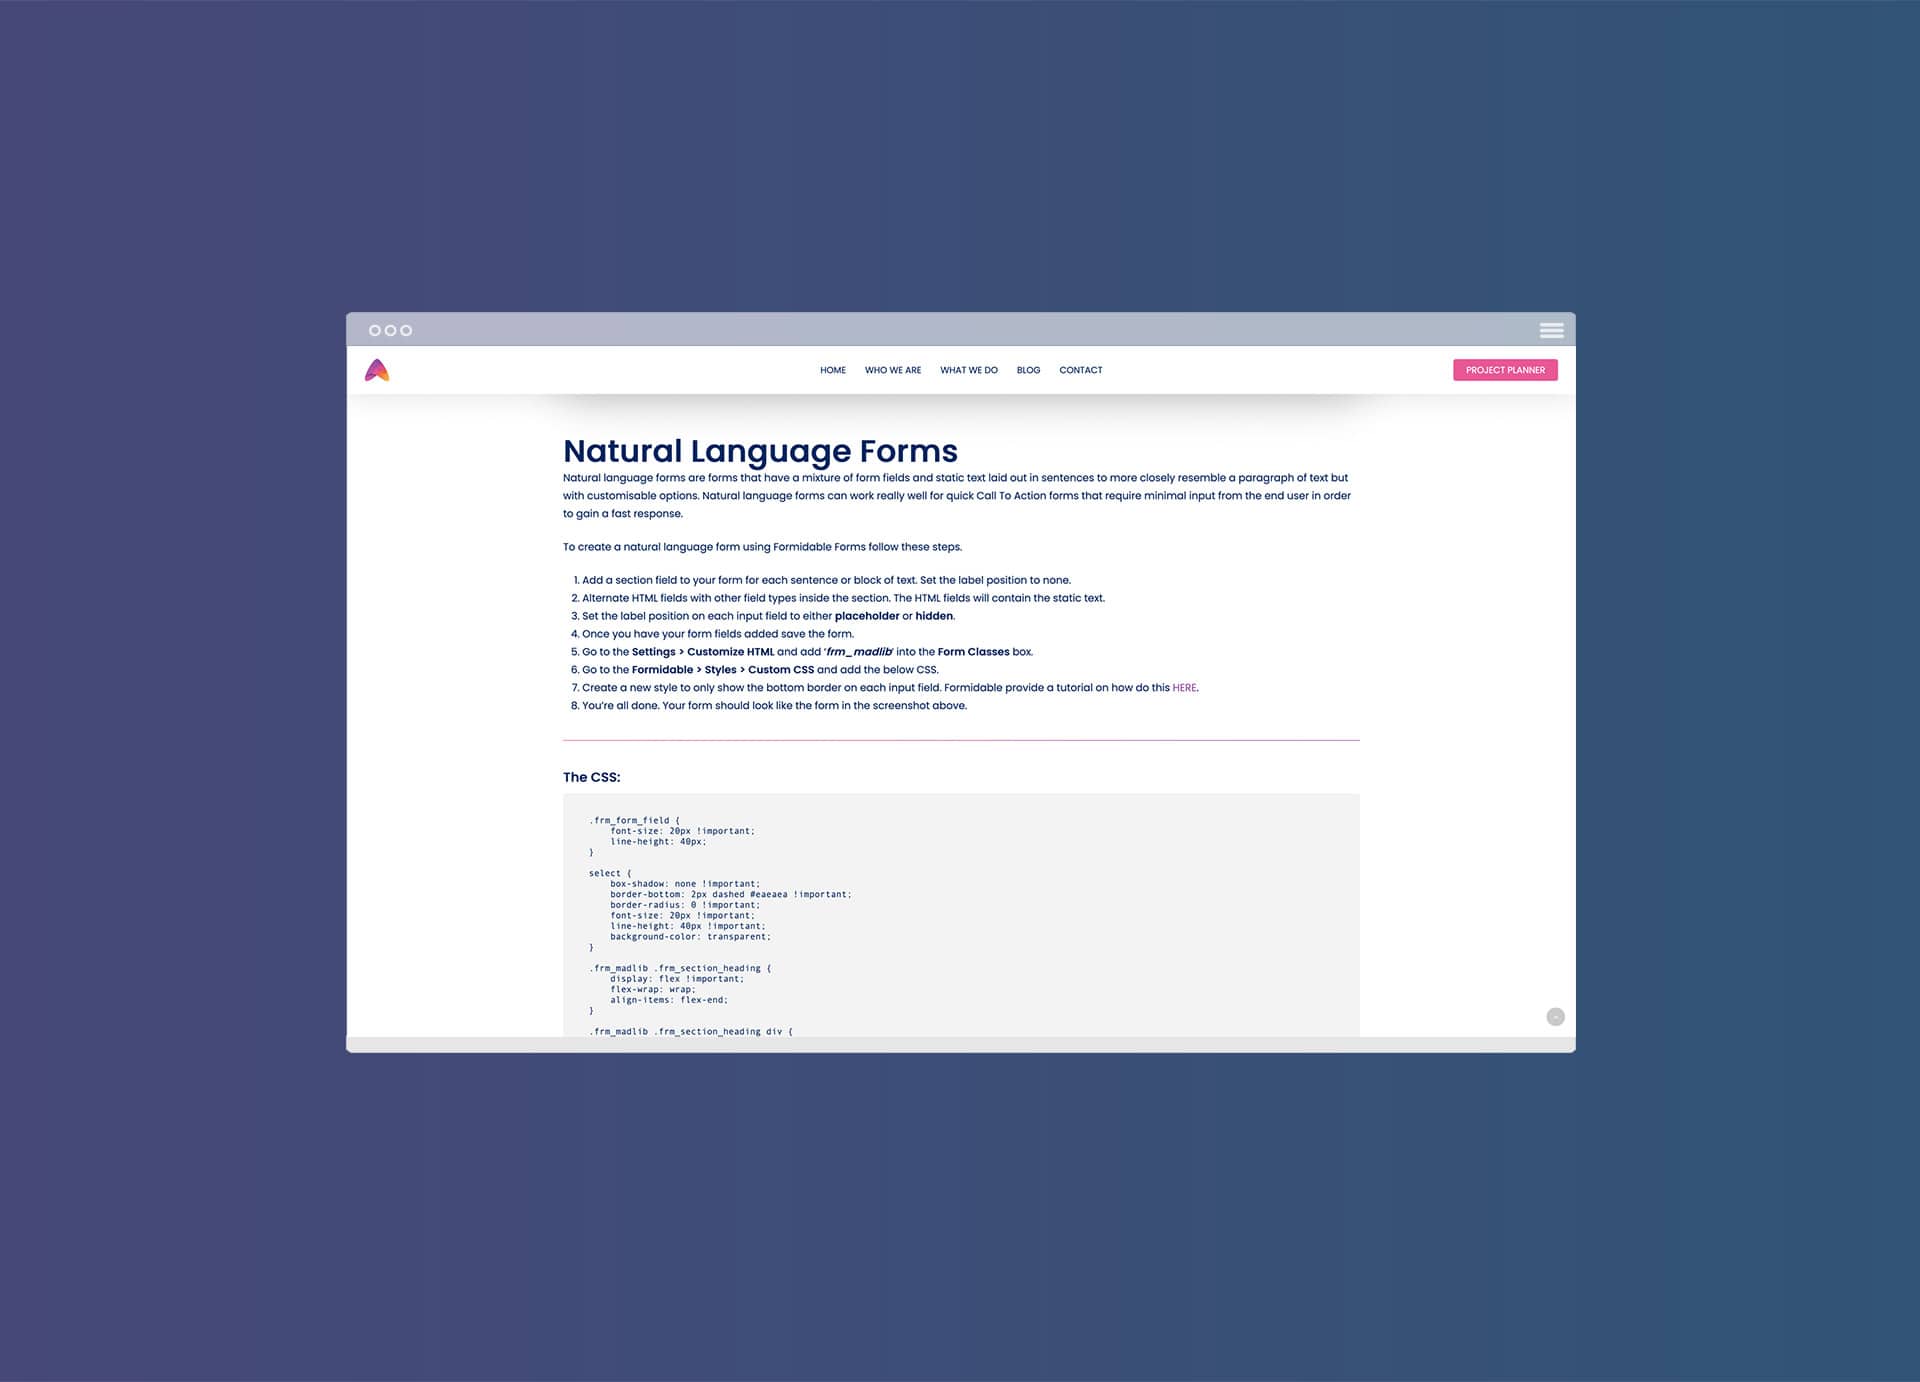 Natural Language Forms - Formidable Forms: Bạn đang tìm kiếm cách tạo mẫu đơn đơn giản và dễ sử dụng cho người dùng của mình? Hãy xem ảnh liên quan đến Natural Language Forms từ Formidable Forms. Những mẫu đơn này sử dụng ngôn ngữ tự nhiên giúp tương tác của người dùng trở nên đơn giản và thuận tiện hơn.